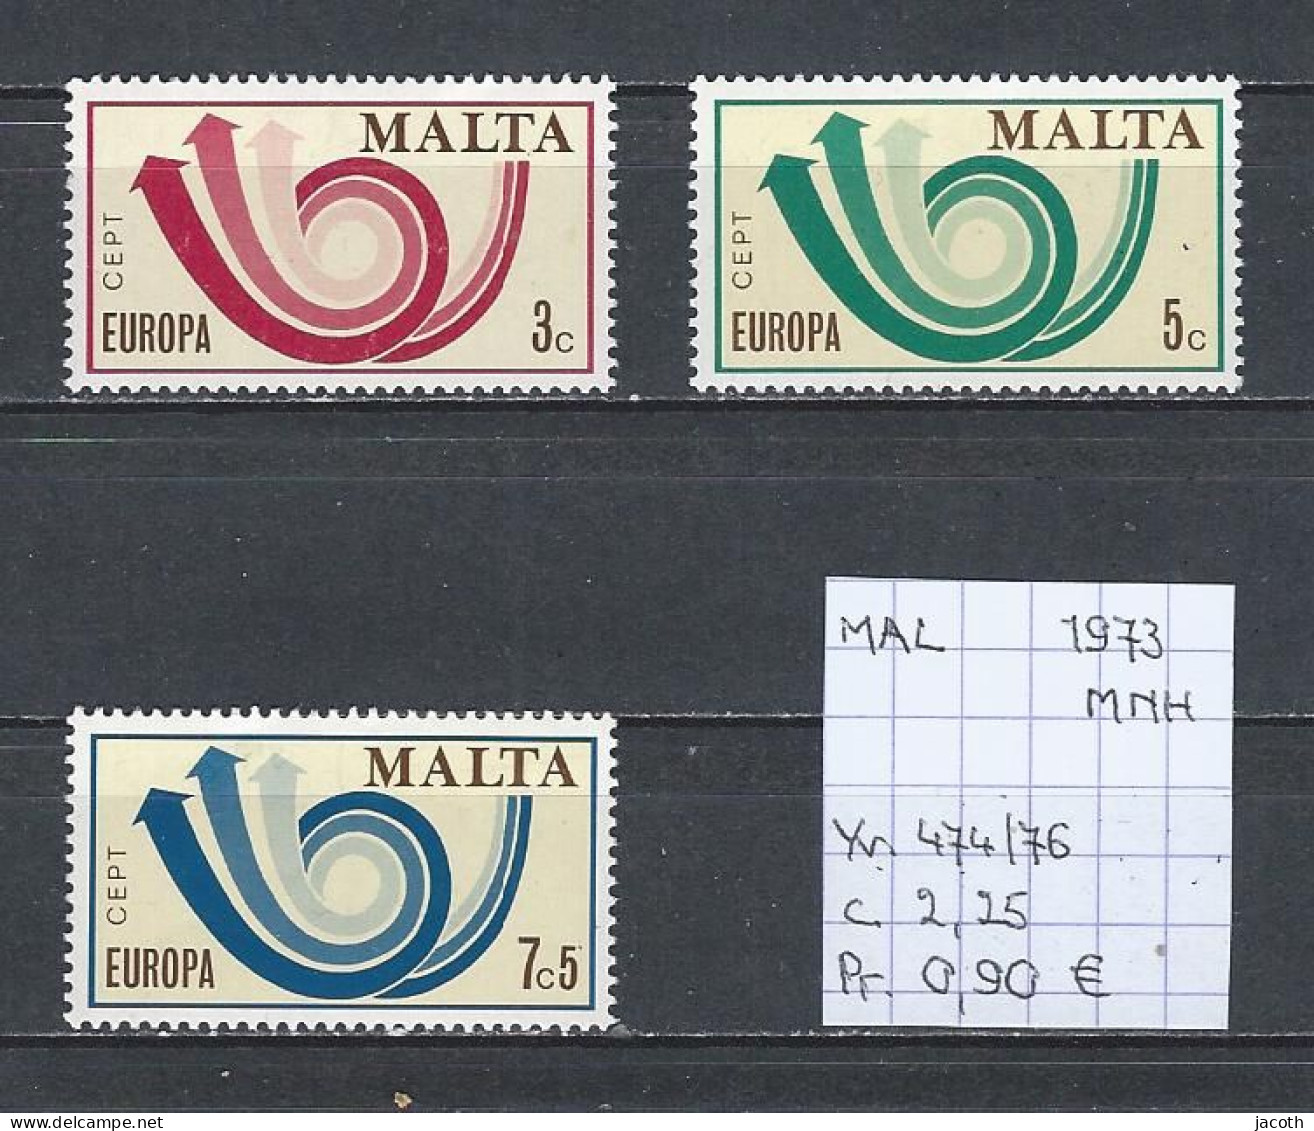 (TJ) Europa CEPT 1973 - Malta YT 474/76 (postfris/neuf/MNH) - 1973